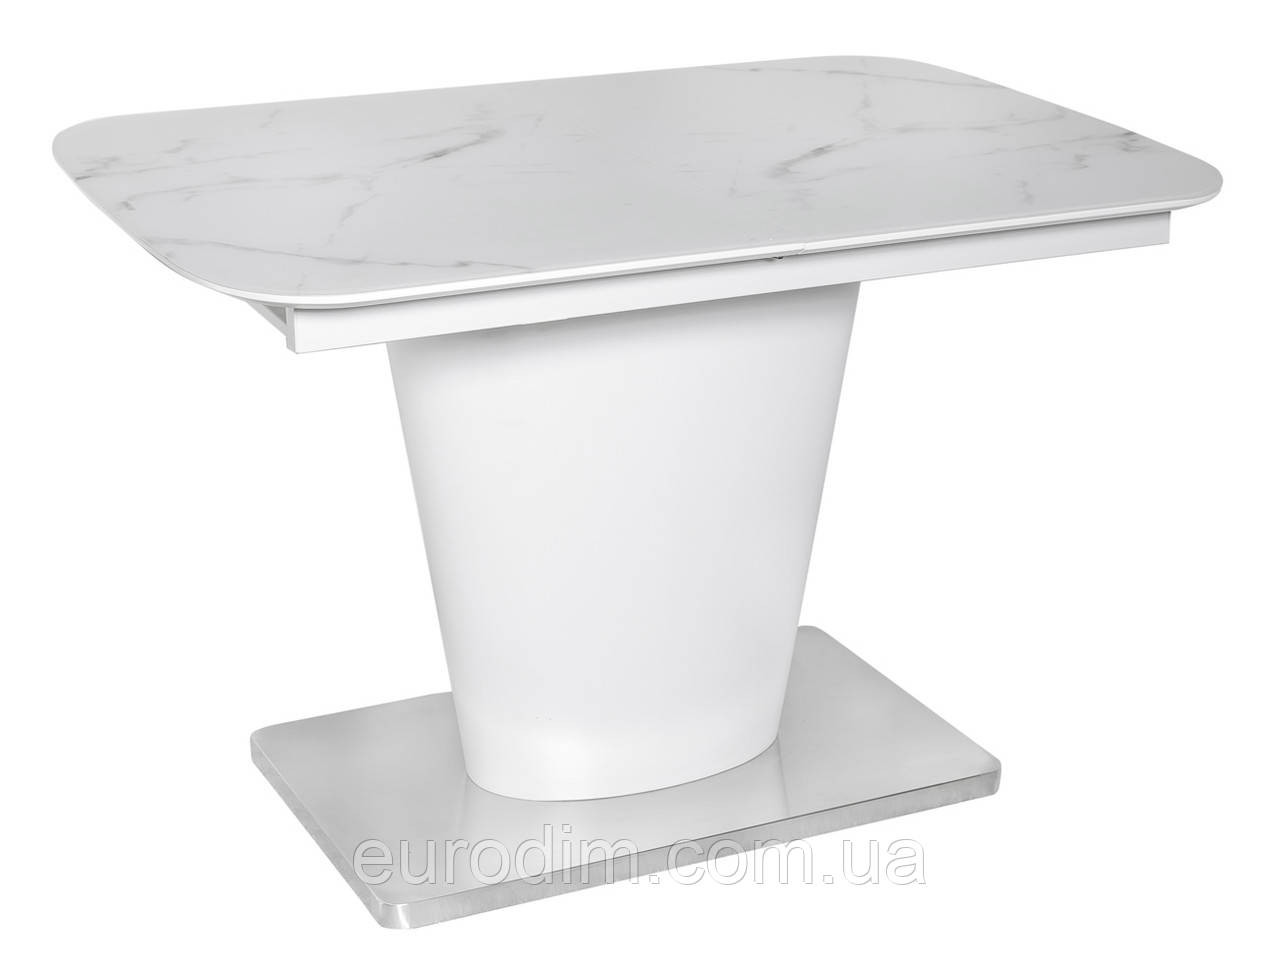 Стол обеденный раскладной стеклянный с МДФ белый мрамор сатин DAOSUN DT 874